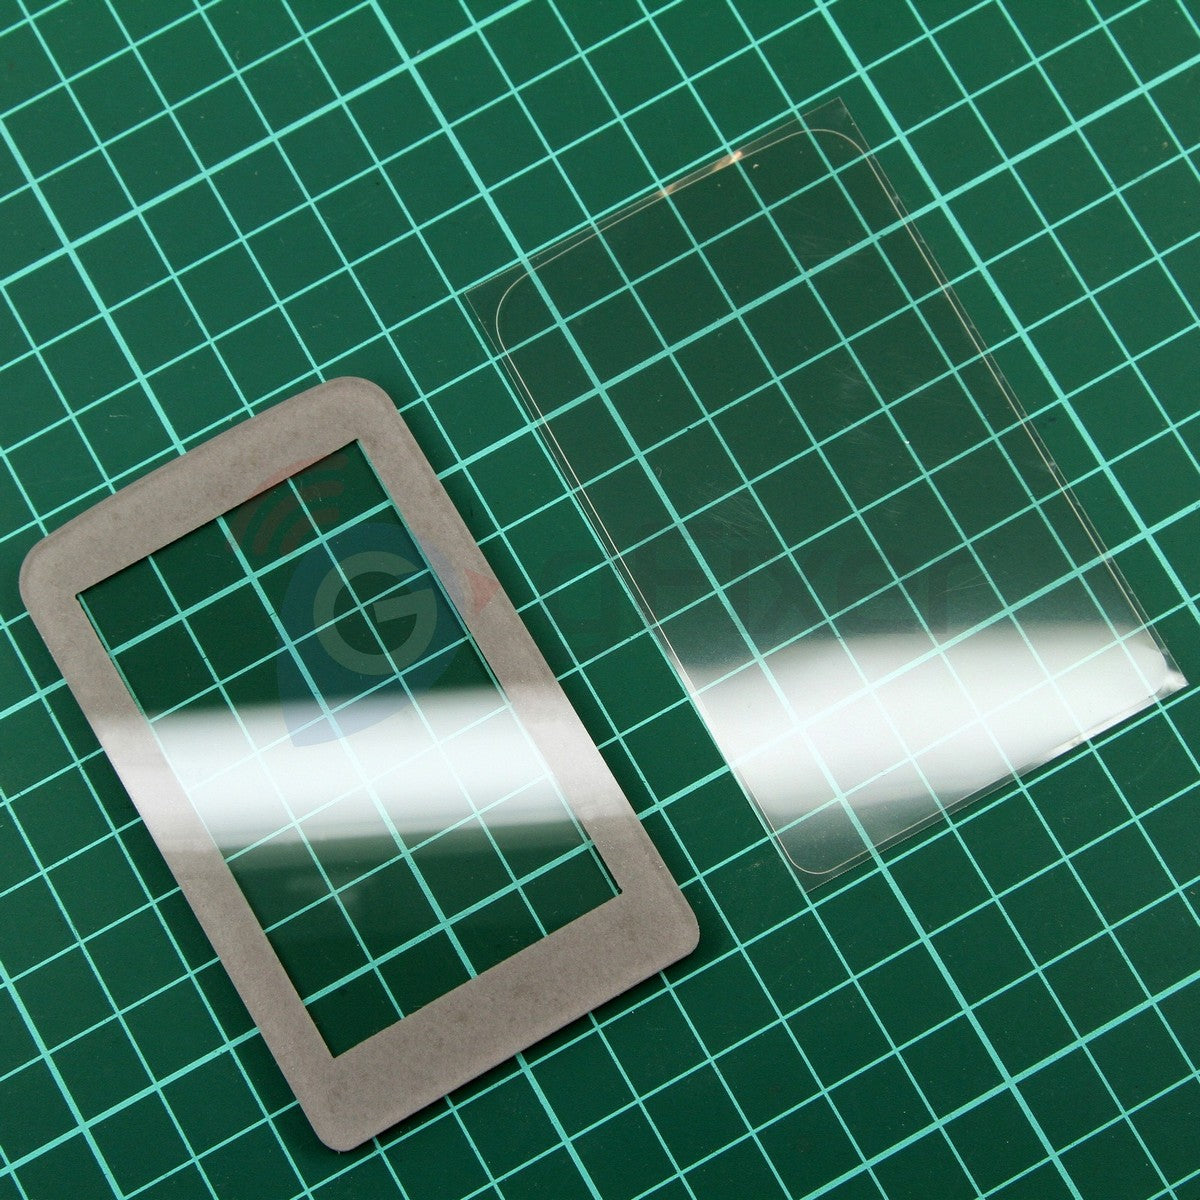 New Shock proof glass Garmin GPSMAP 66s part replacement repair lens DIY